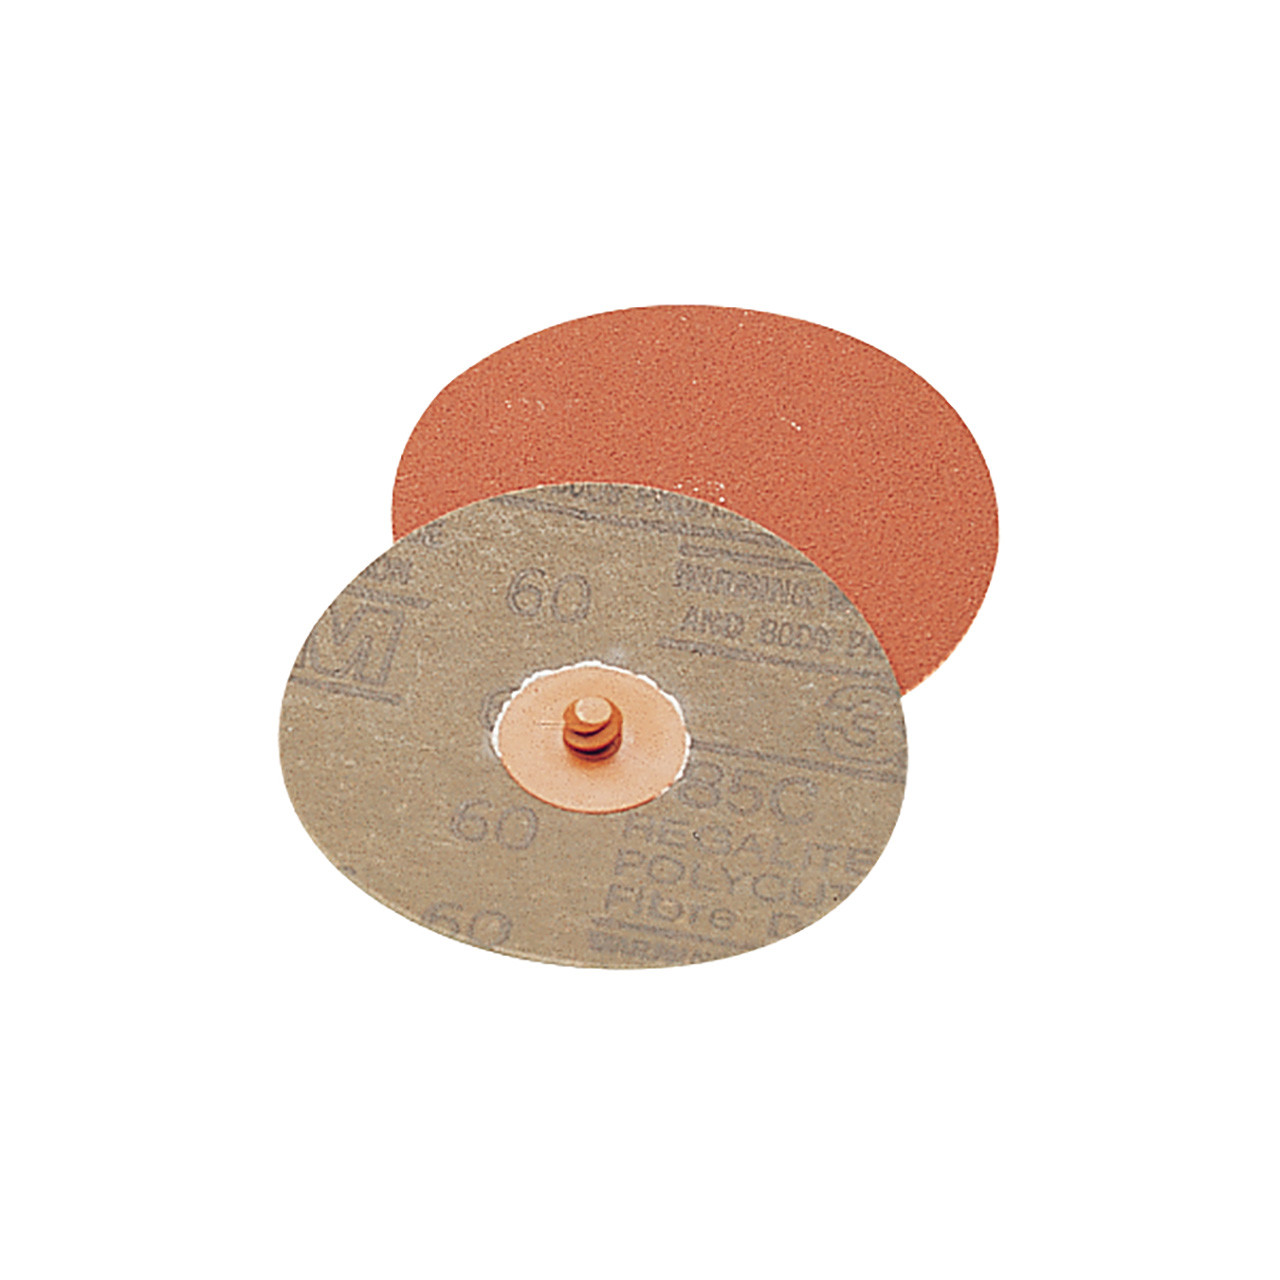 3M™ Roloc Regalite 2" Orange (60 Grit) Discs